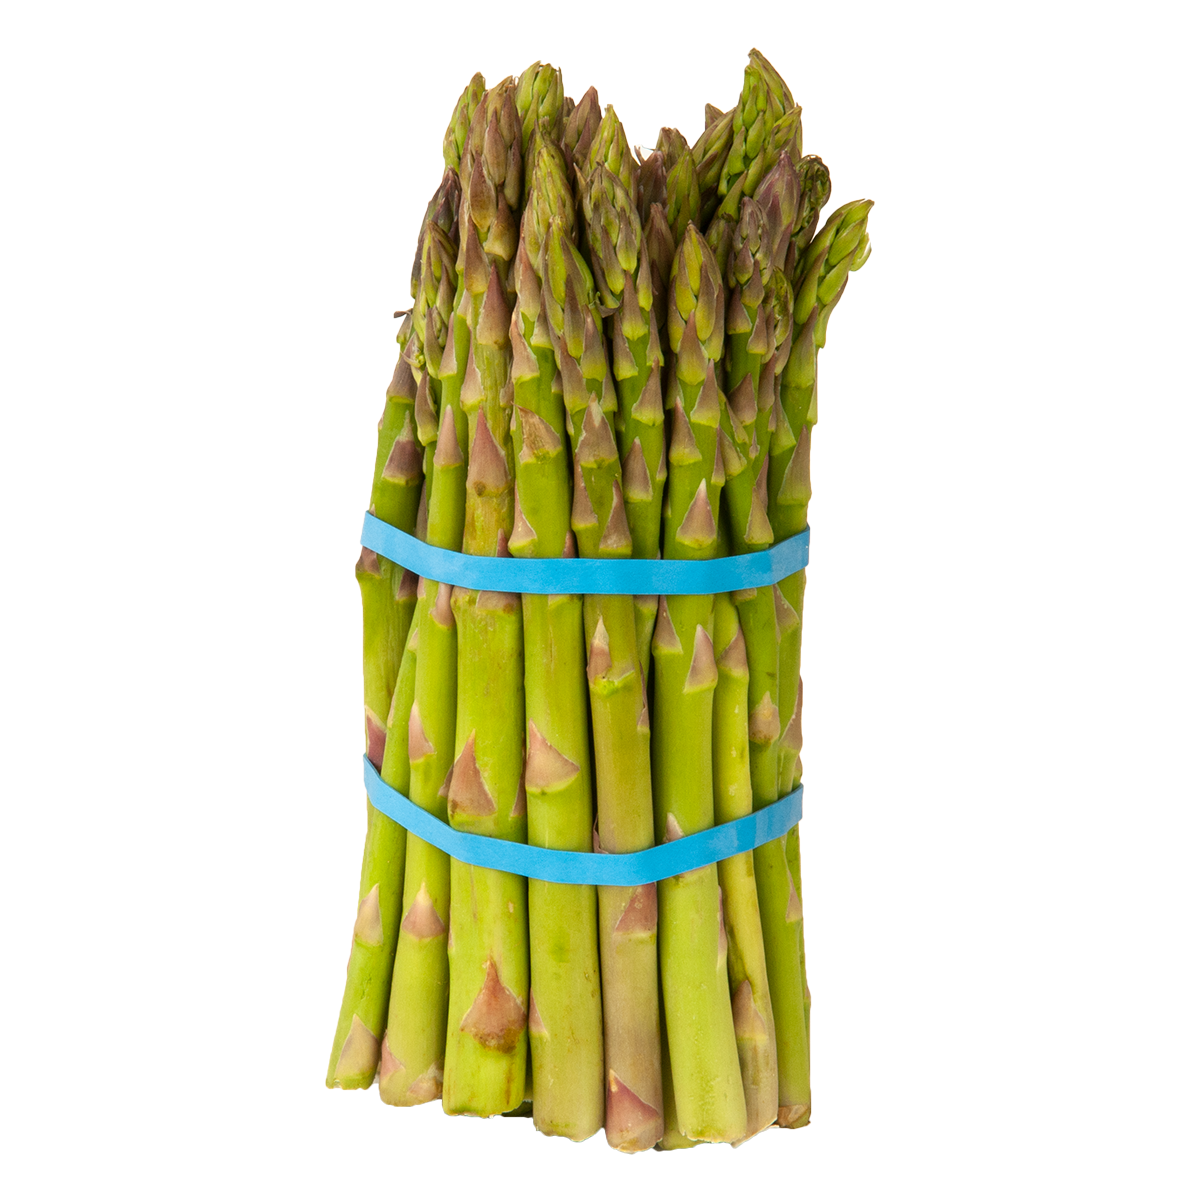 Asparagus - Bunch